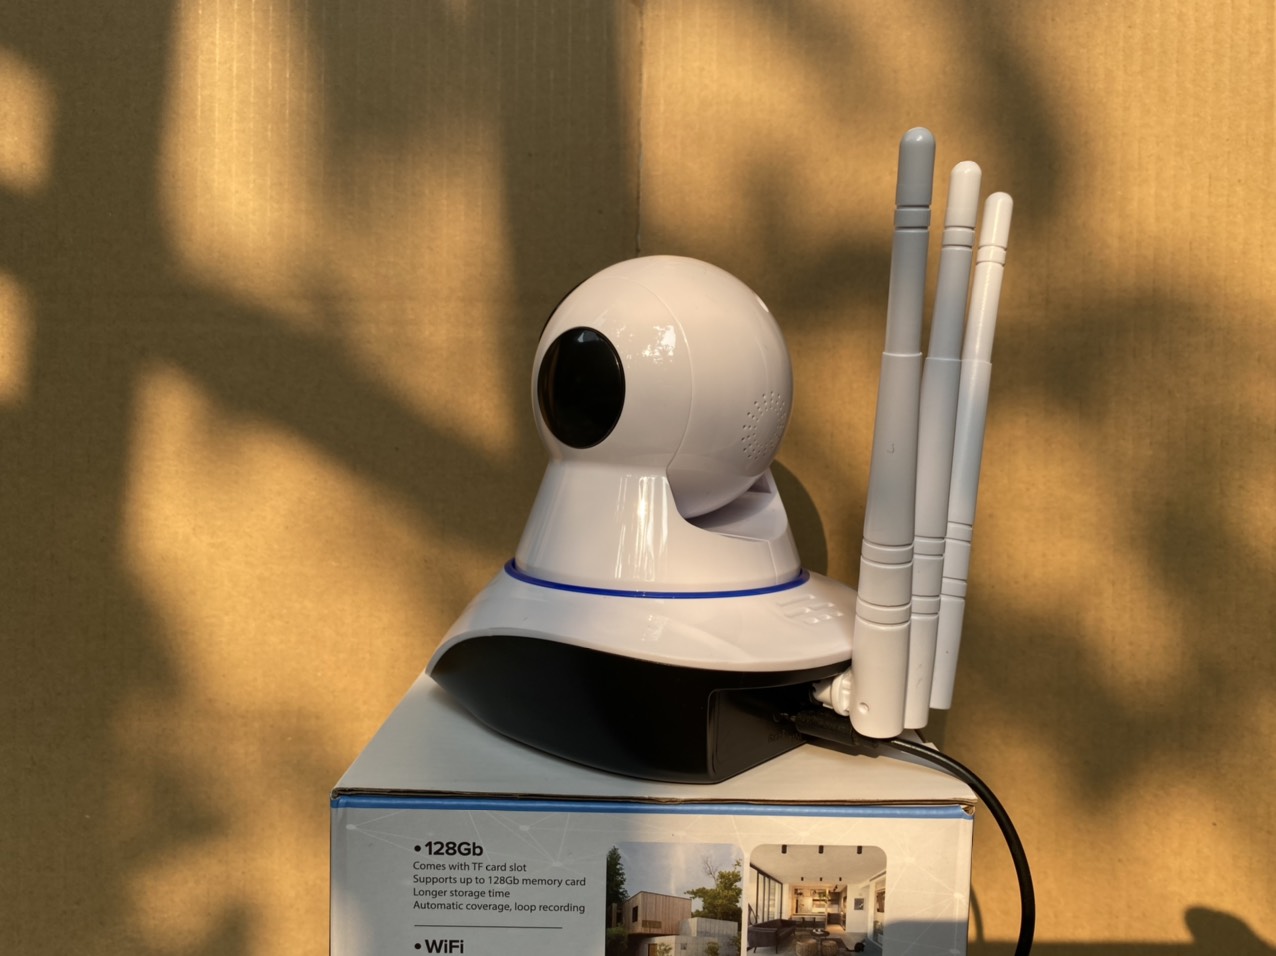 Camera Wifi Yoosee 3 râu 11 led - Xoay 360 độ, cảnh báo chống trộm - Hàng chính hãng